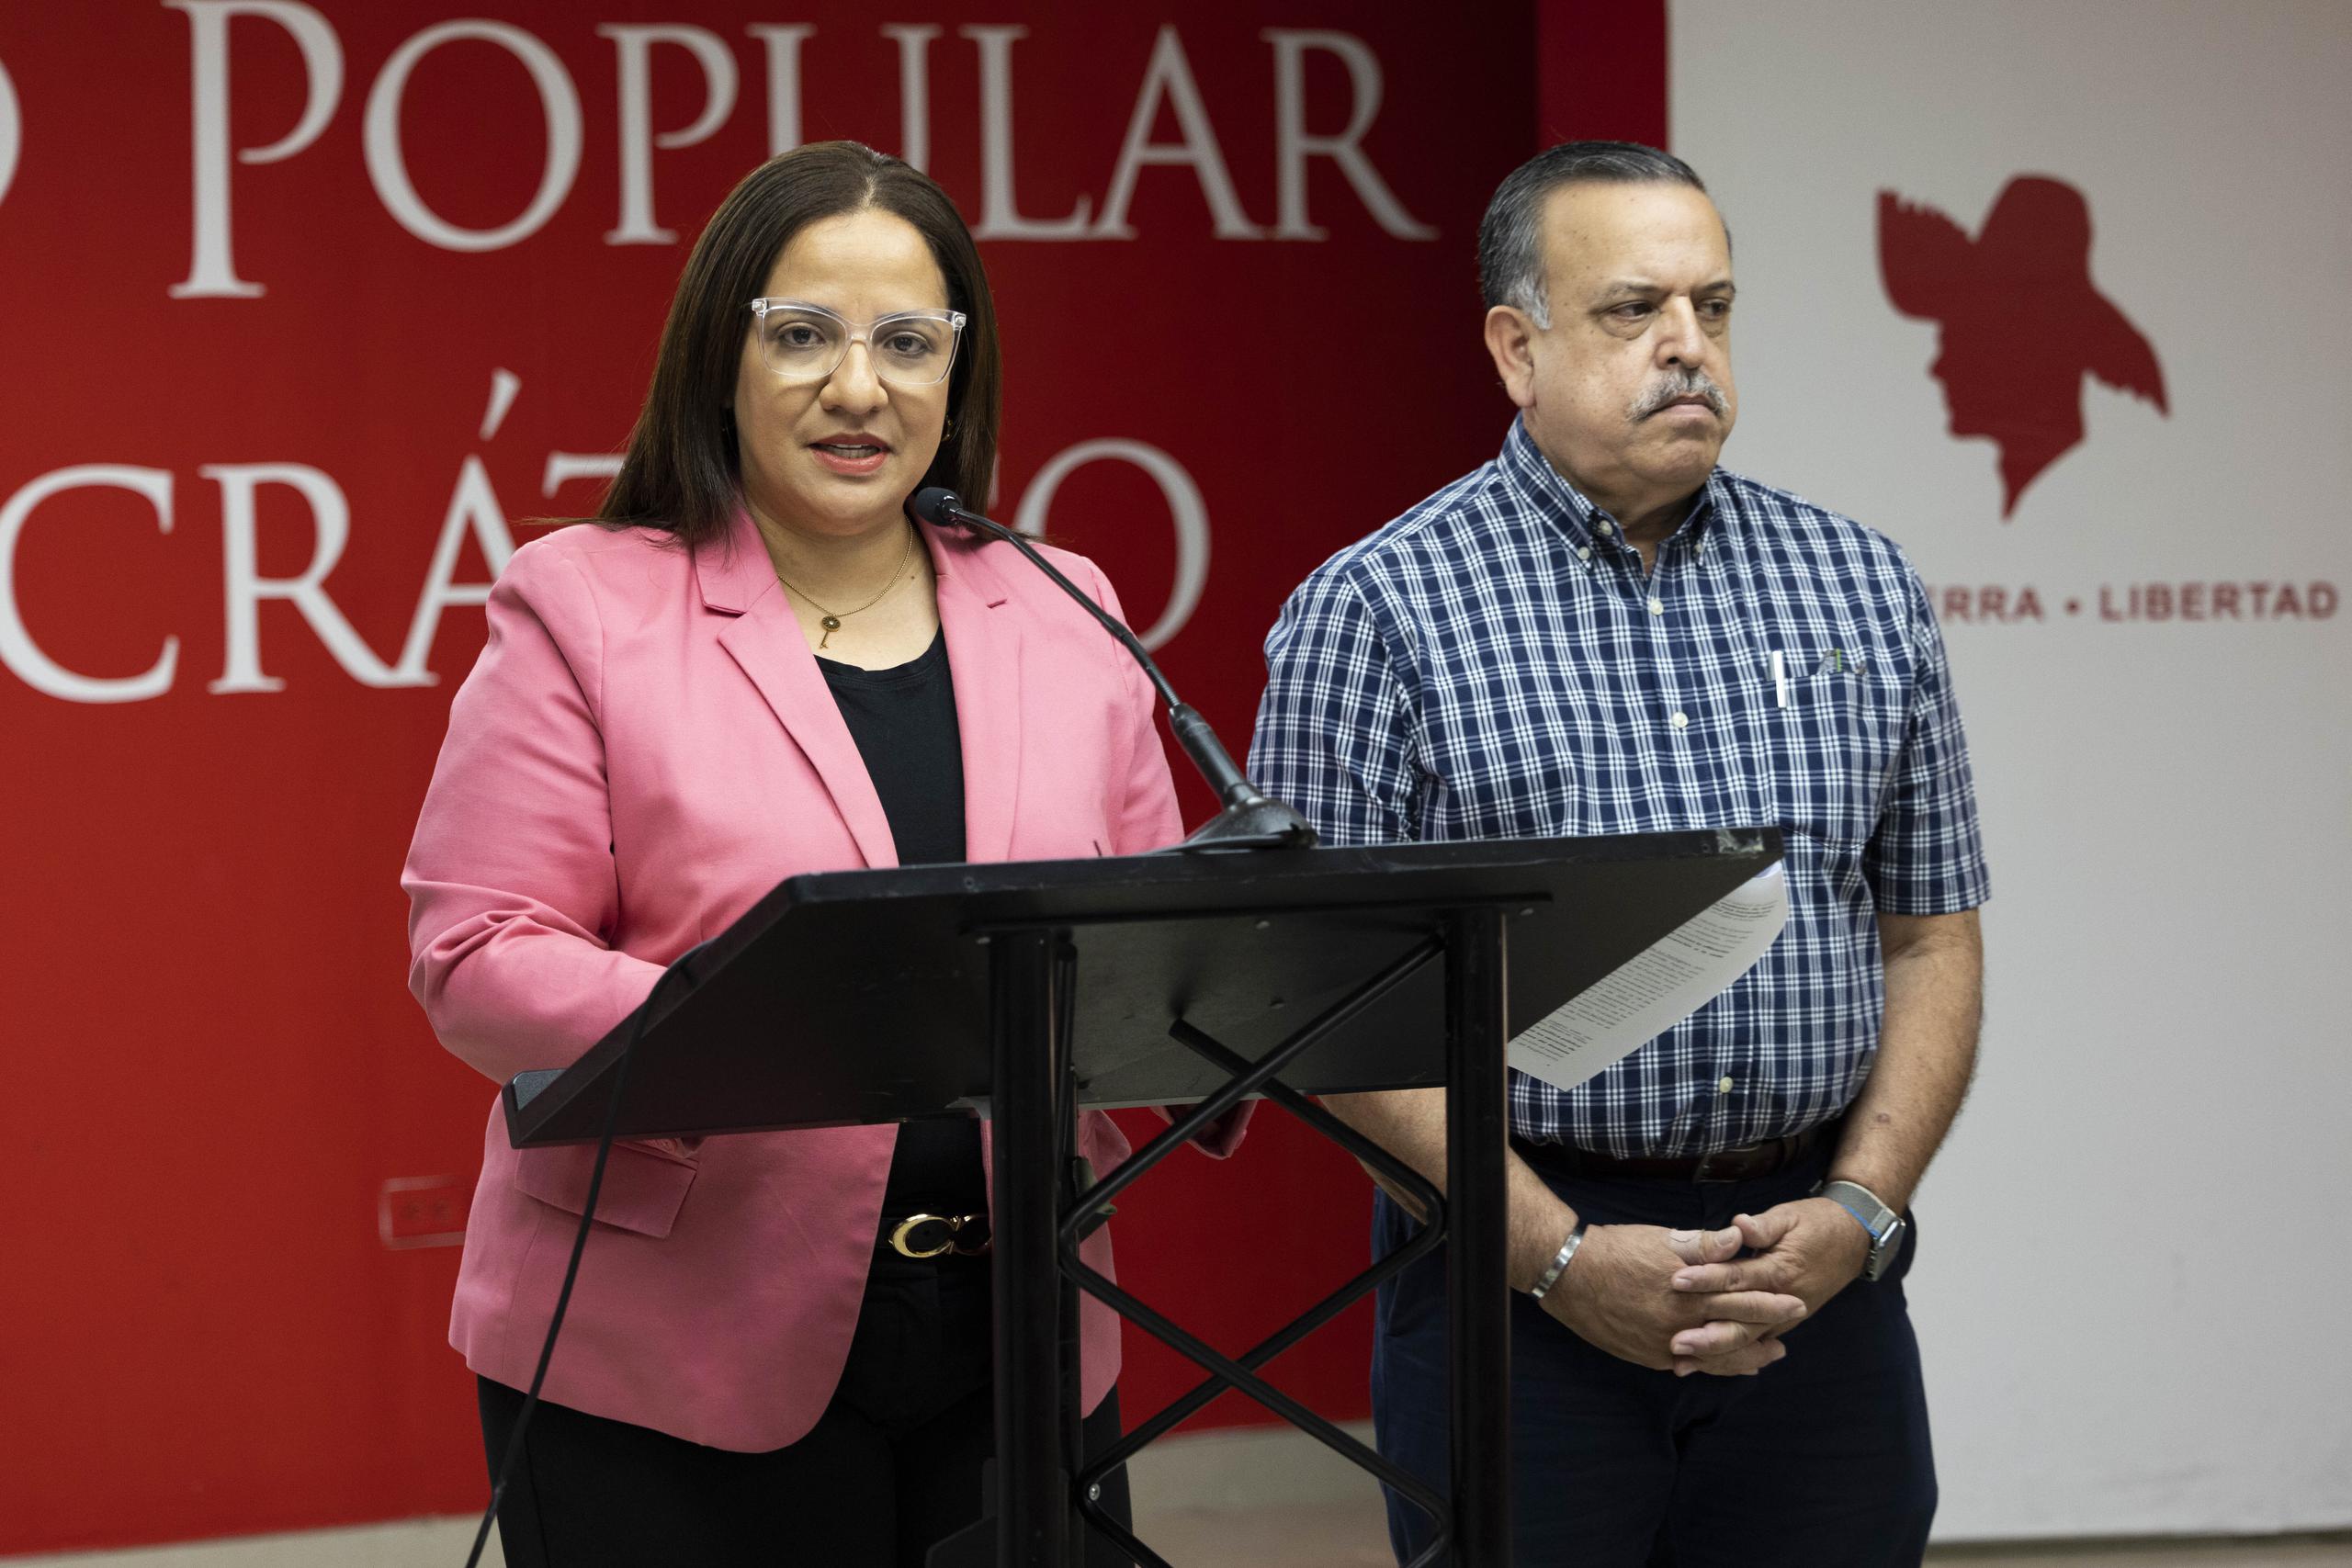 La comisionada electoral del PPD, Karla Angleró, y el secretario general del PPD, Gerardo "Toñito" Cruz, afirmaron que el gobierno continúa usando fondos públicos en anuncios para realzar la imagen del gobernador, en violación de ley.